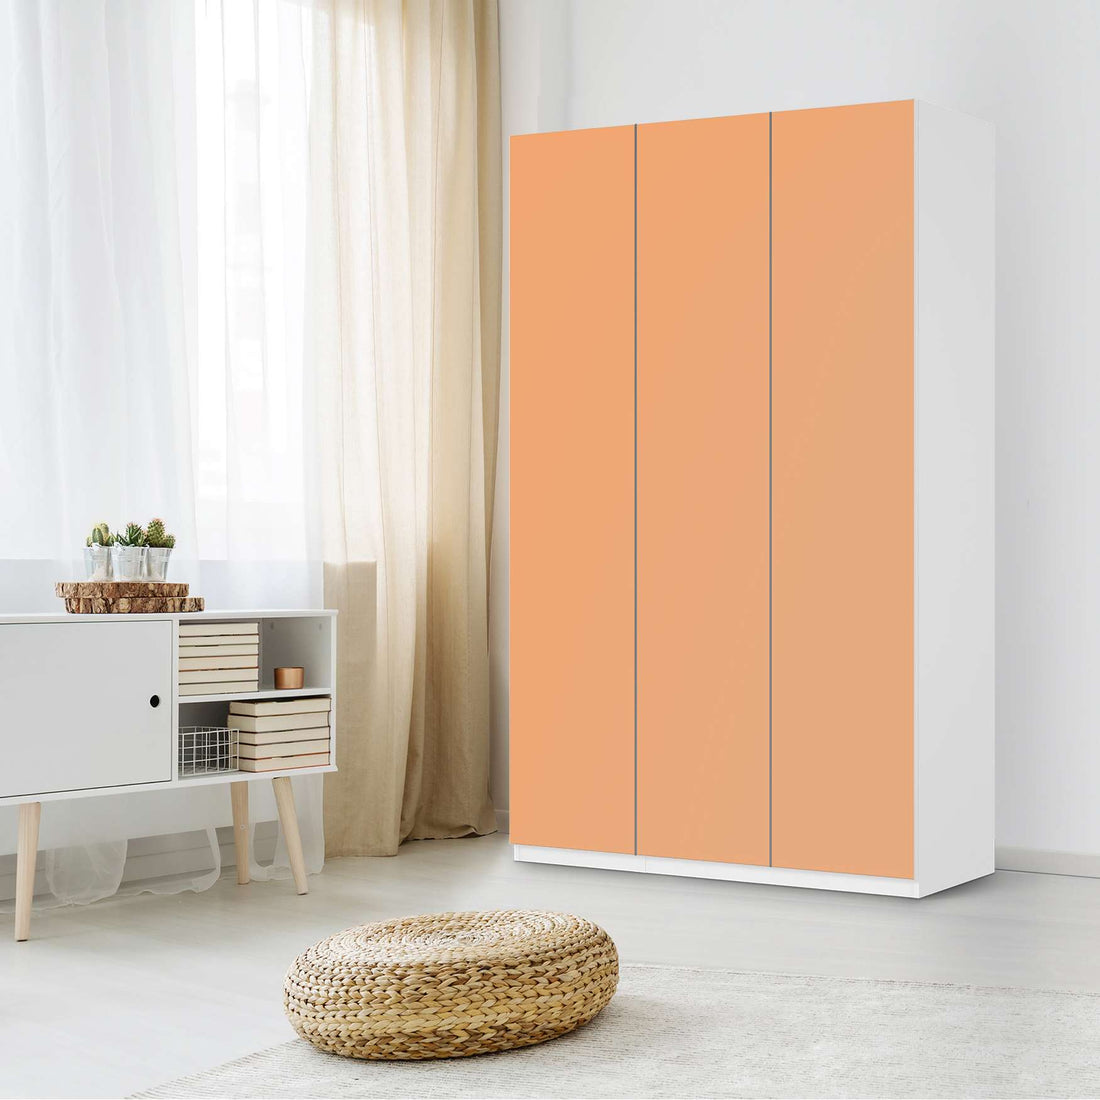 Selbstklebende Folie Orange Light - IKEA Pax Schrank 236 cm Höhe - 3 Türen - Schlafzimmer